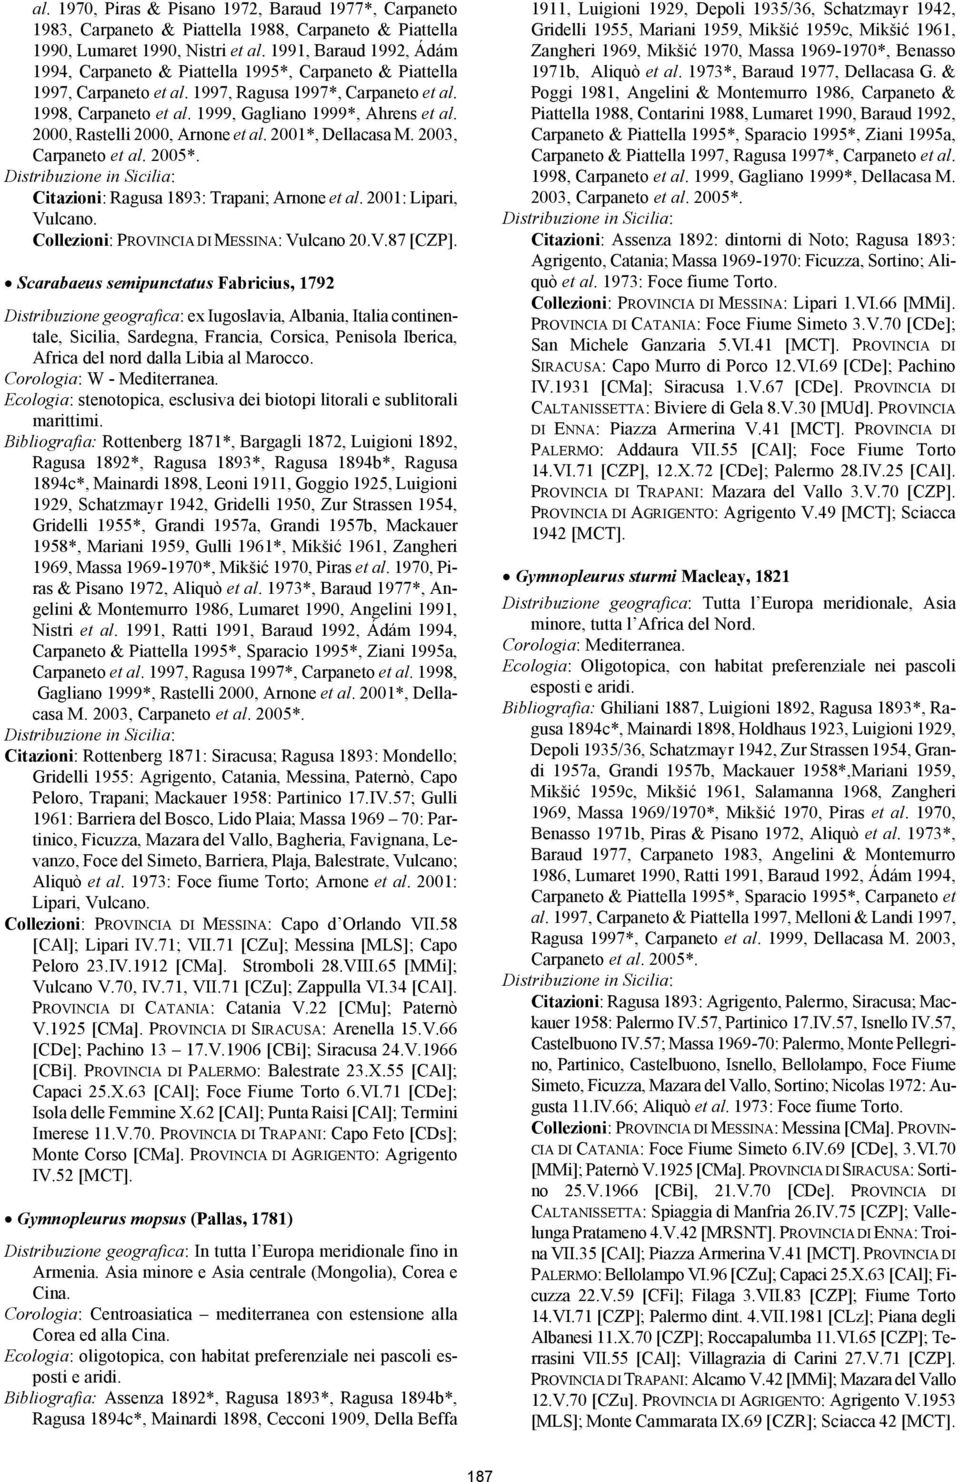 2000, Rastelli 2000, Arnone et al. 2001*, Dellacasa M. 2003, Carpaneto et al. 2005*. Citazioni: Ragusa 1893: Trapani; Arnone et al. 2001: Lipari, Vulcano. Collezioni: PROVINCIA DI MESSINA: Vulcano 20.